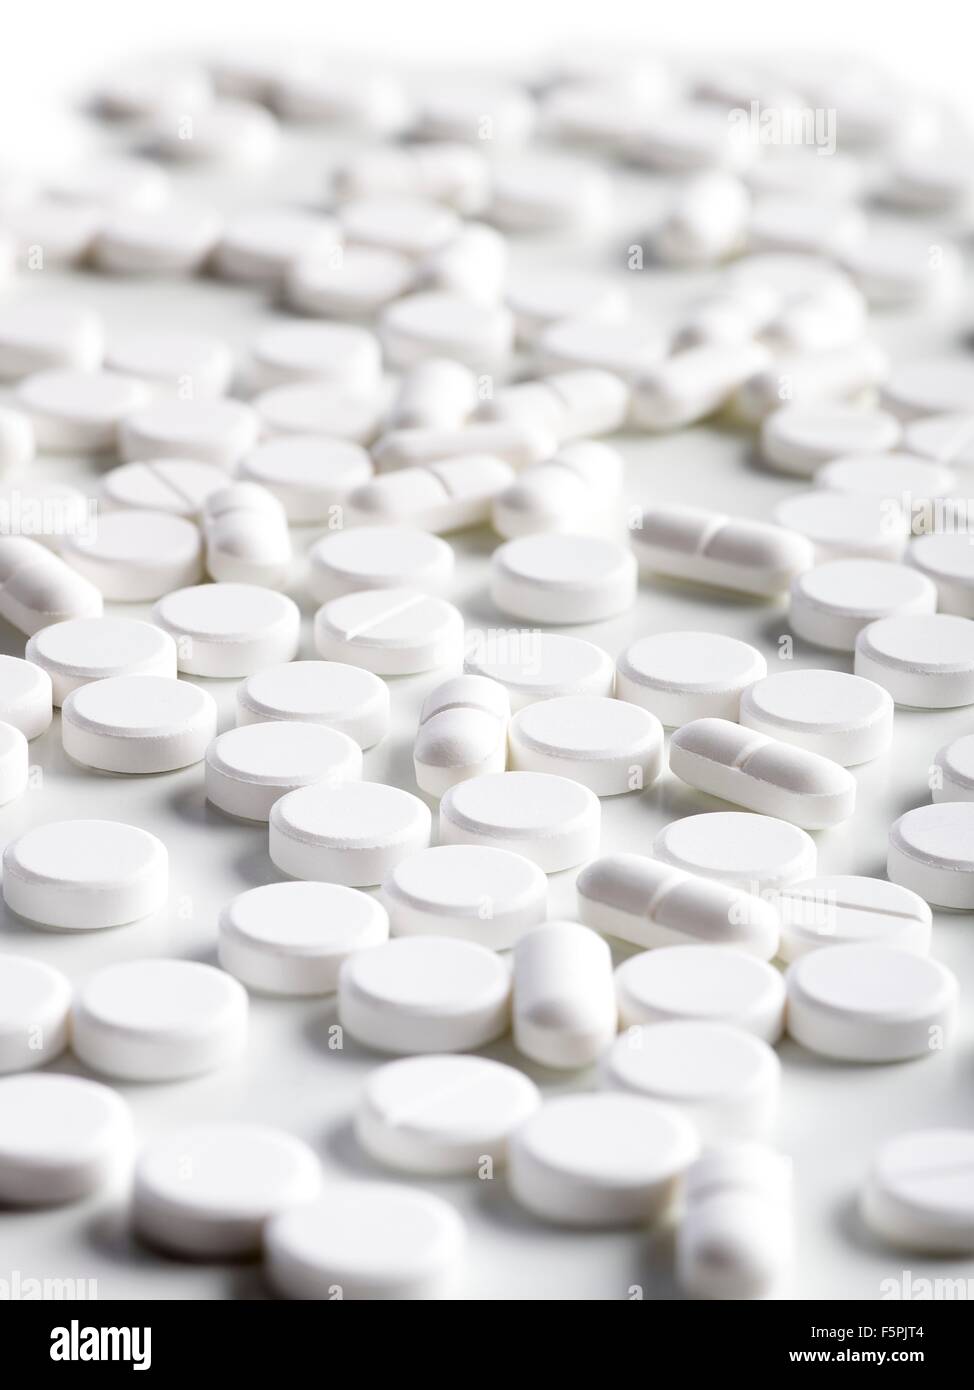 White pills, close up. Stock Photo